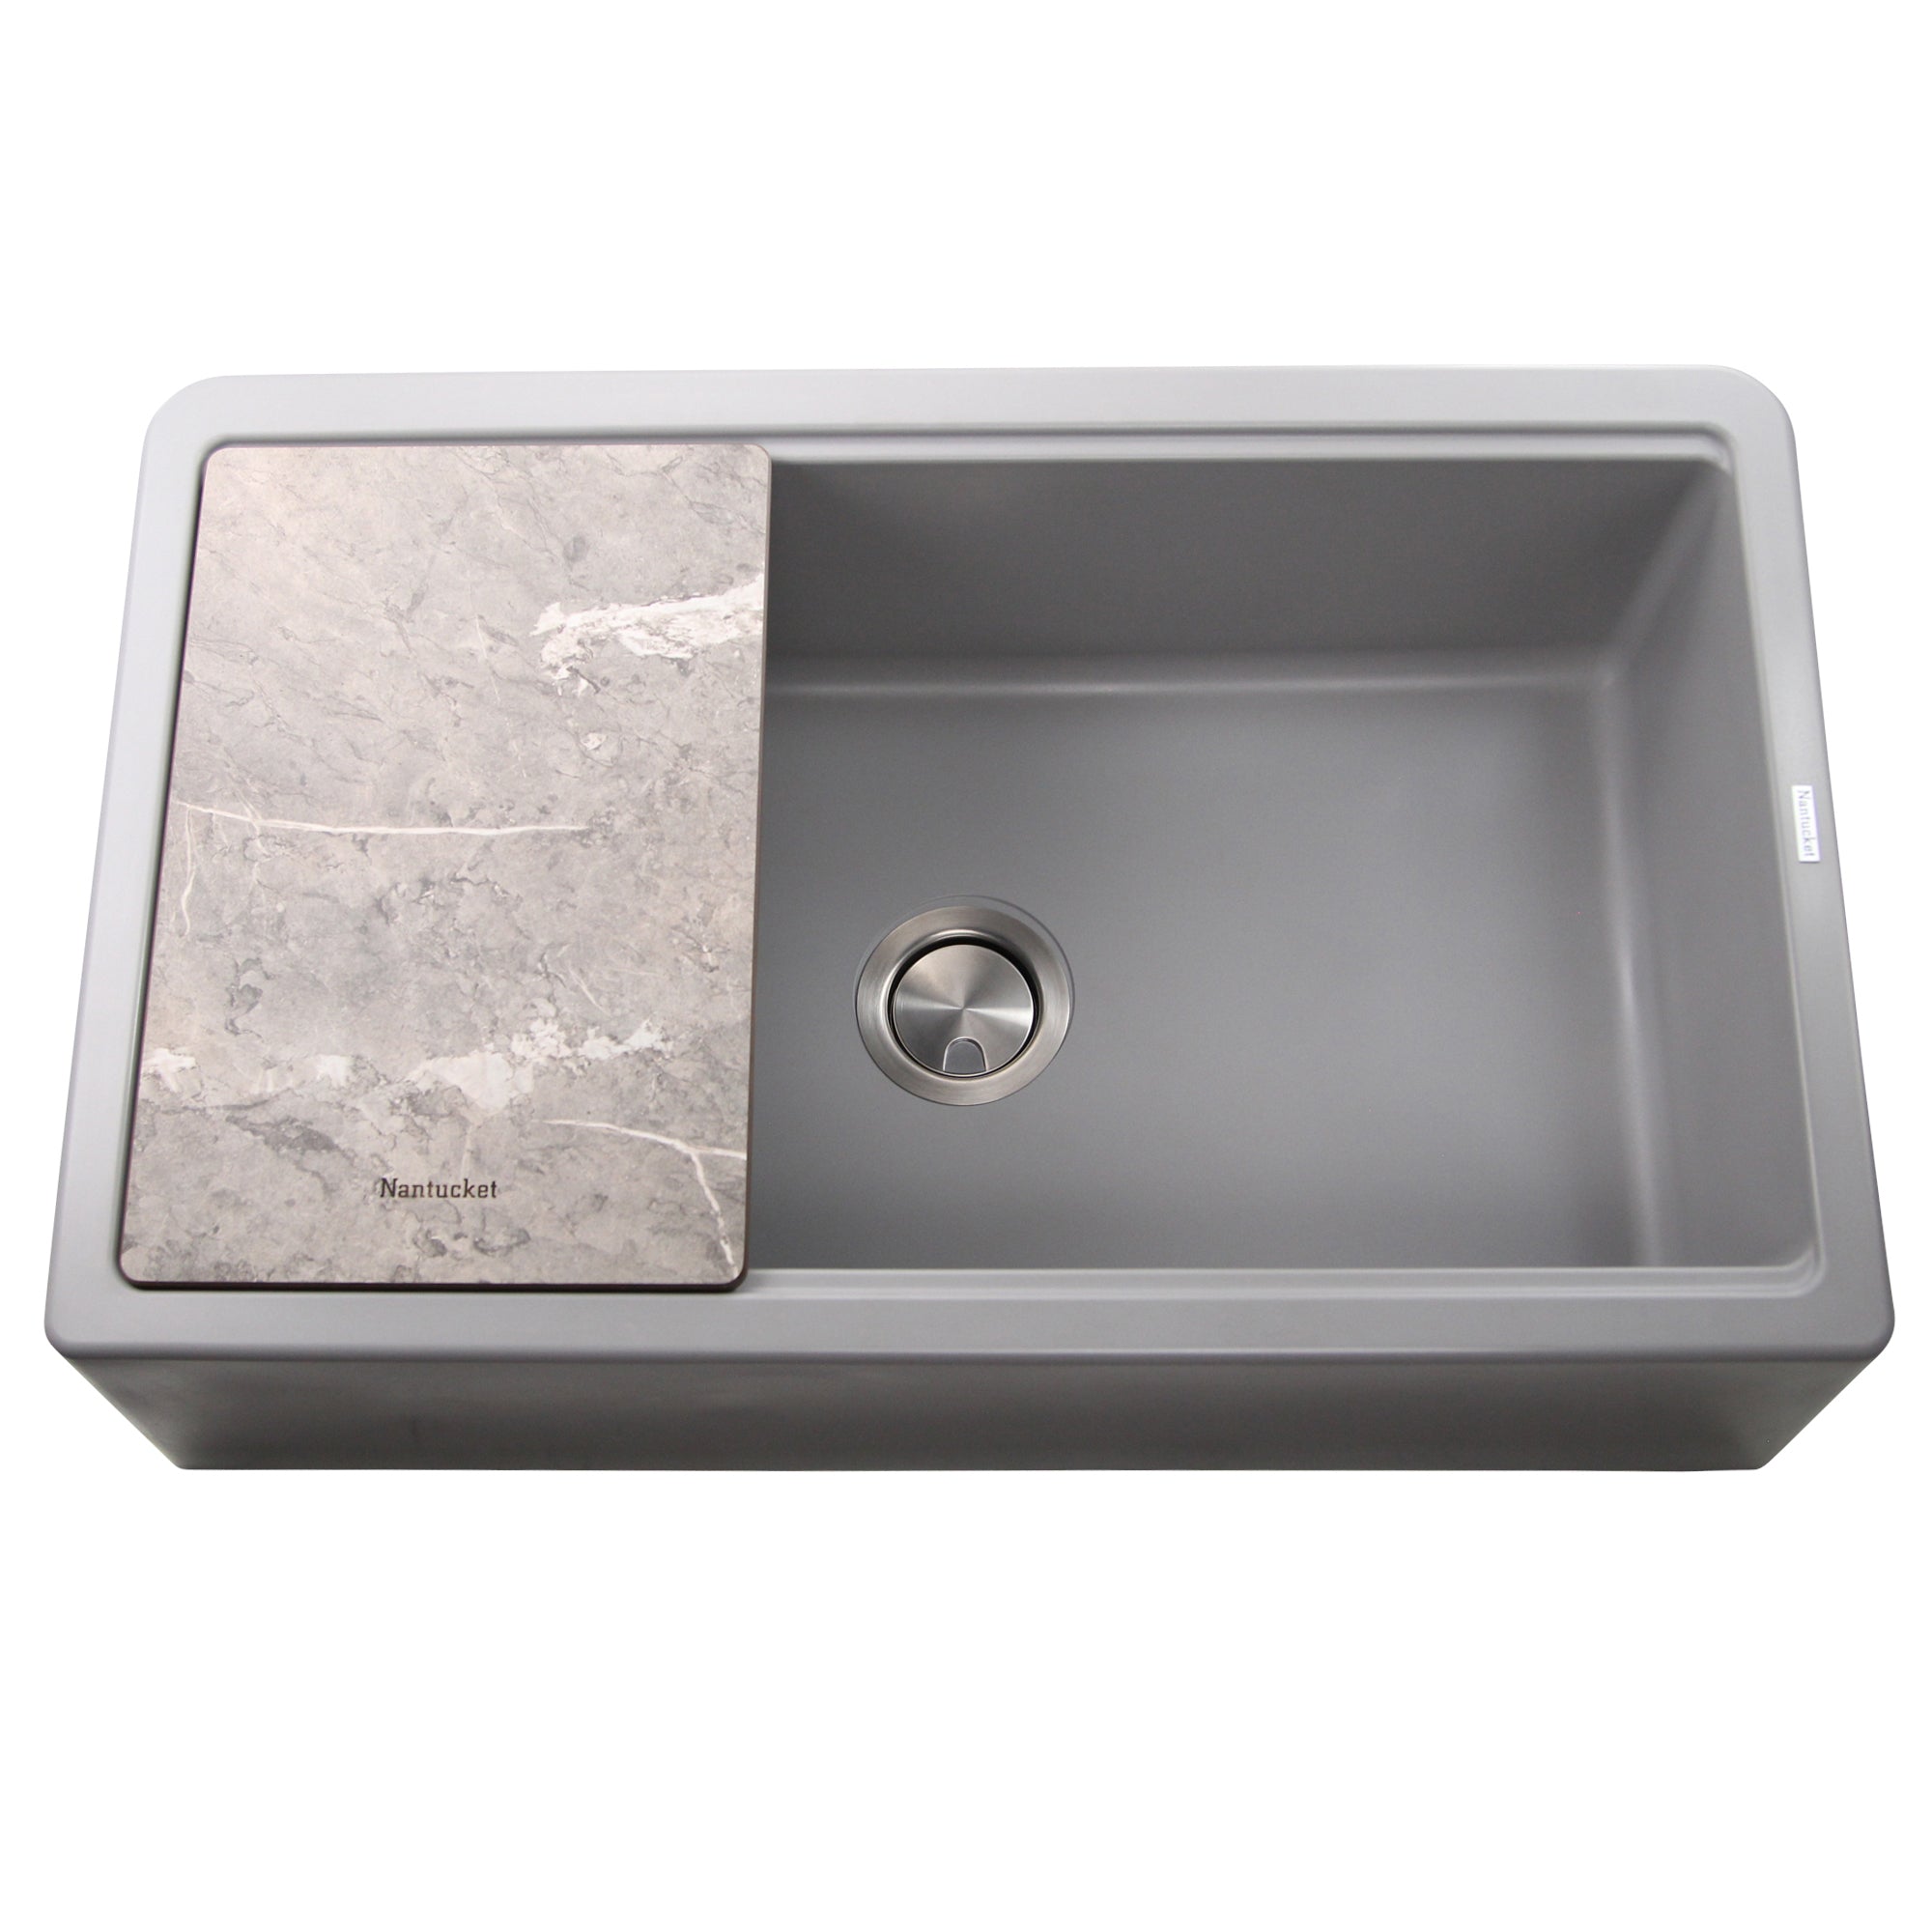 grey kitchen sink